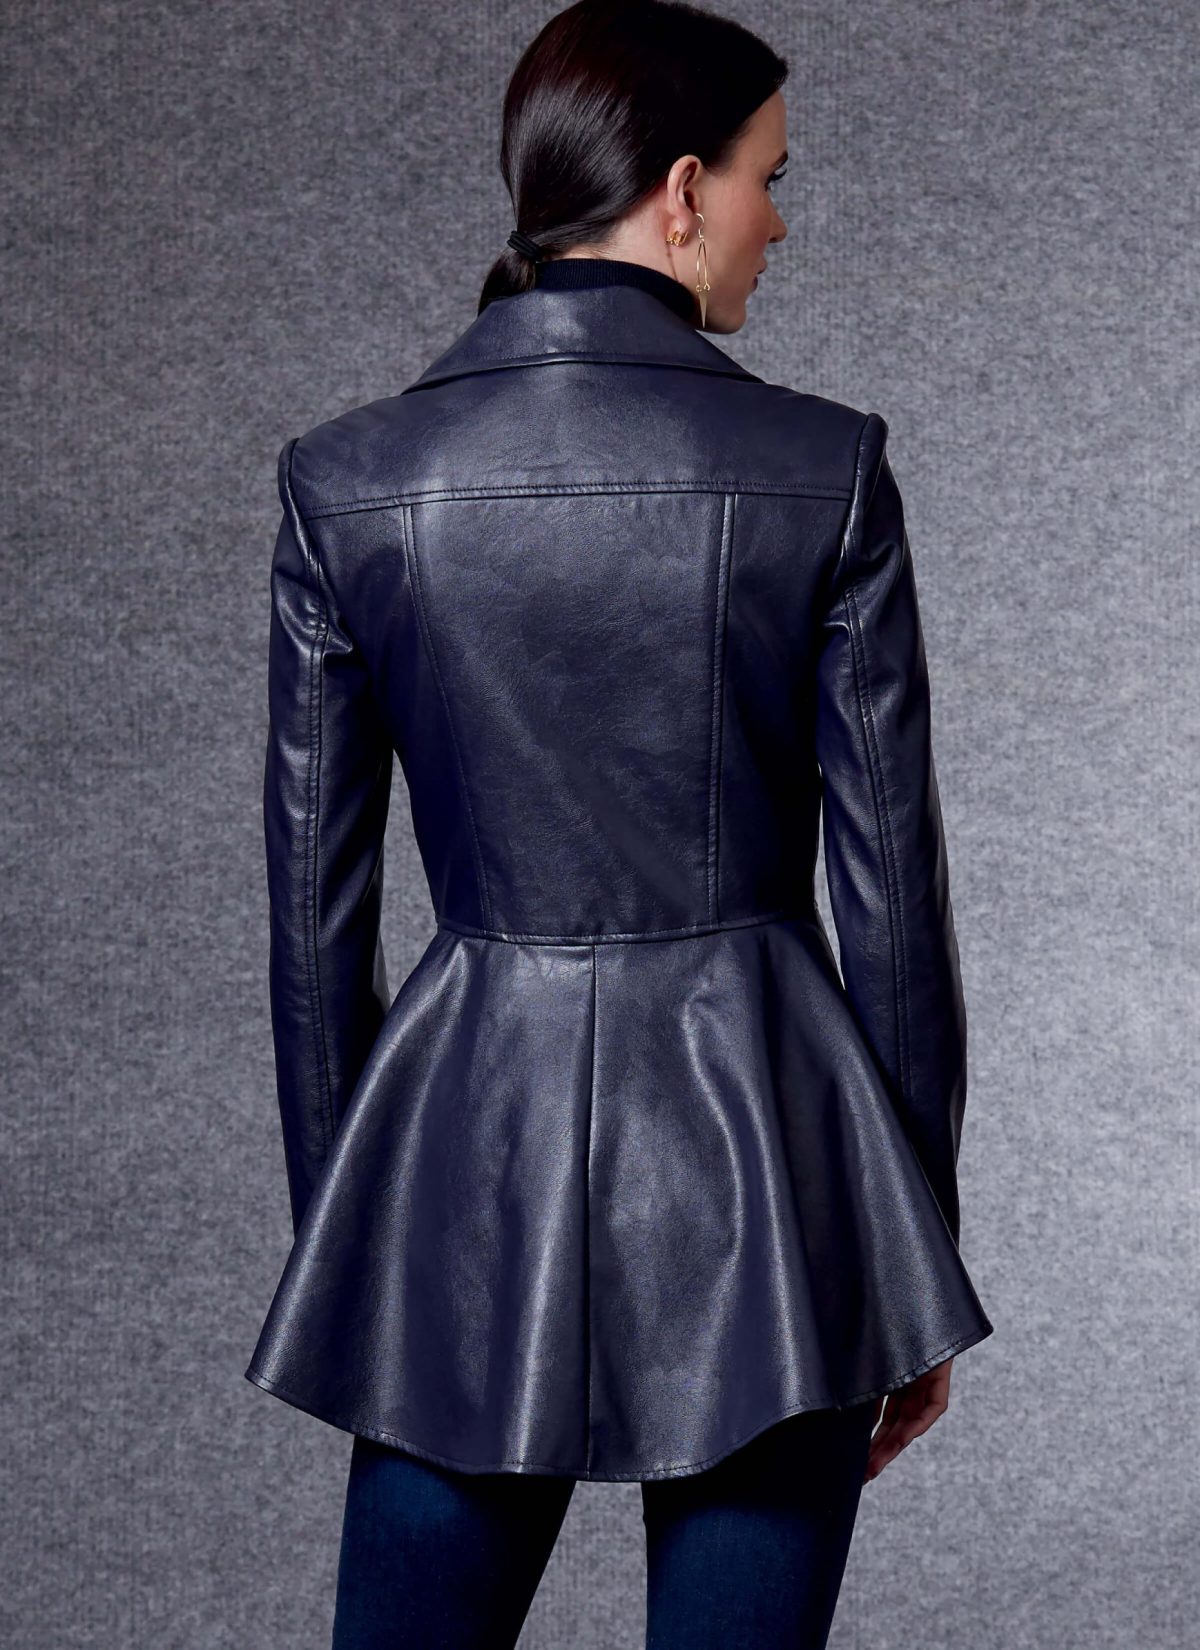 Vogue Patterns V1714 Misses' Jacket